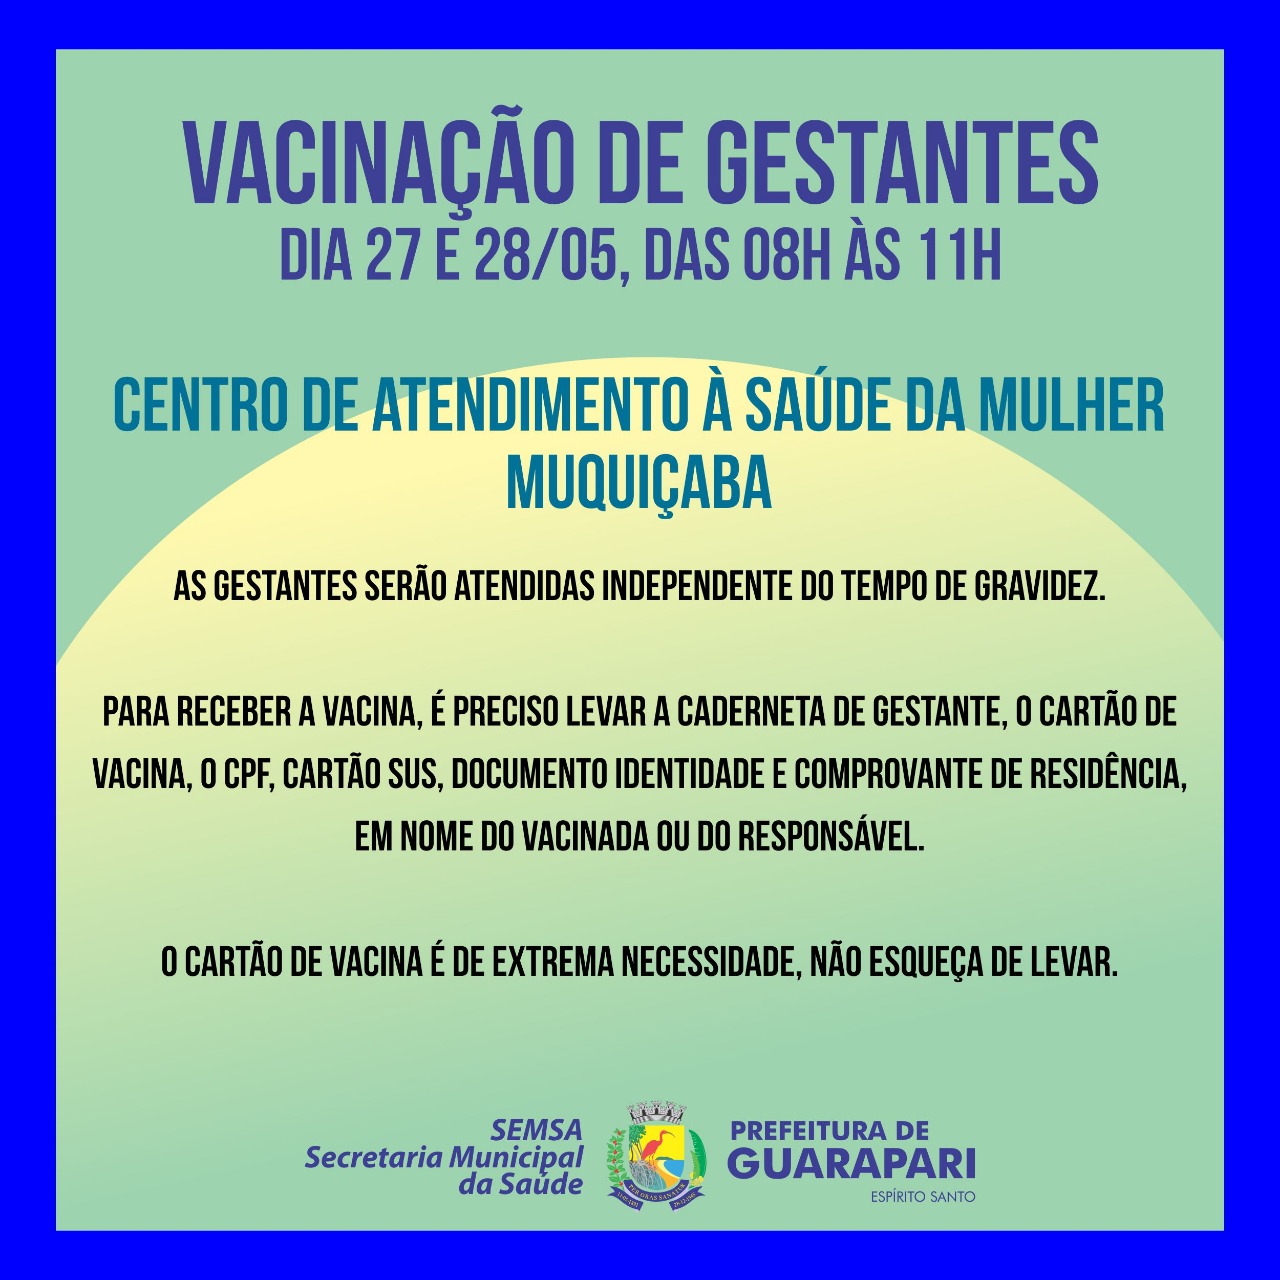 Saúde da mulher vai disponibilizar vacinas para gestantes nesta quinta e sexta-feira  